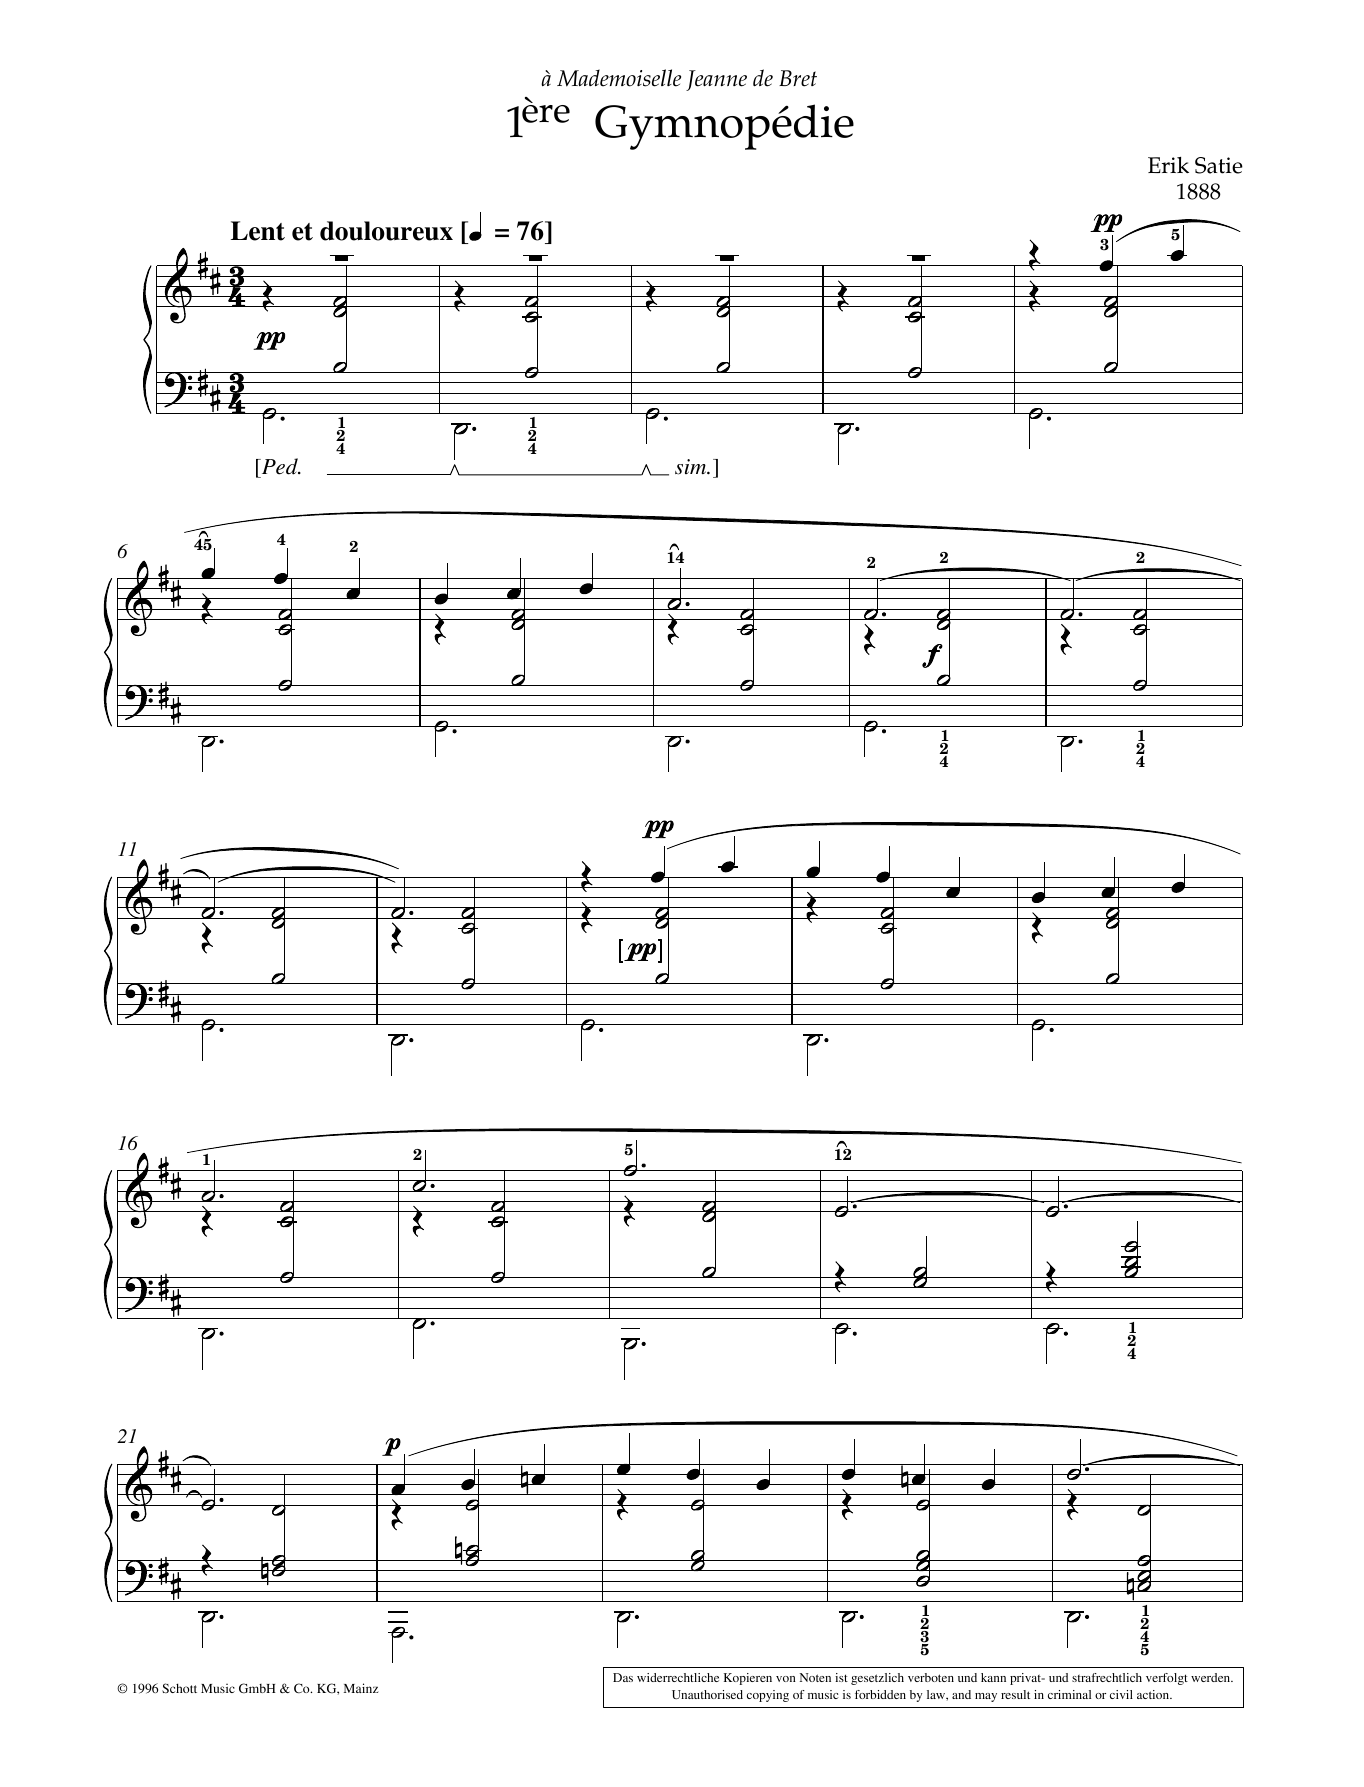 Download Erik Satie 1ere Gymnopedie Sheet Music